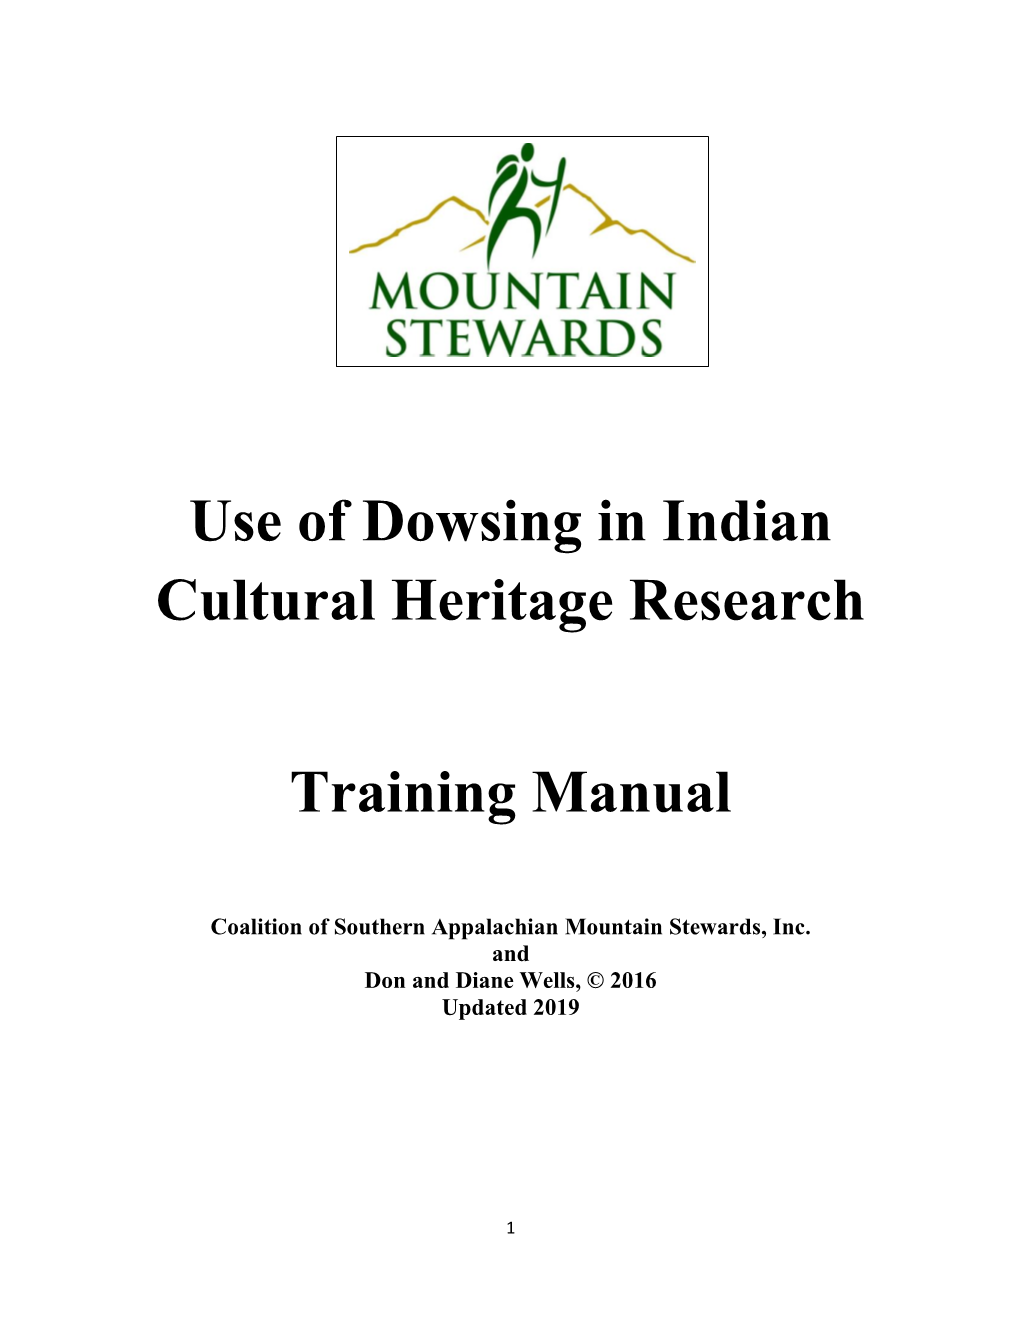 Dowsing Manual 2019